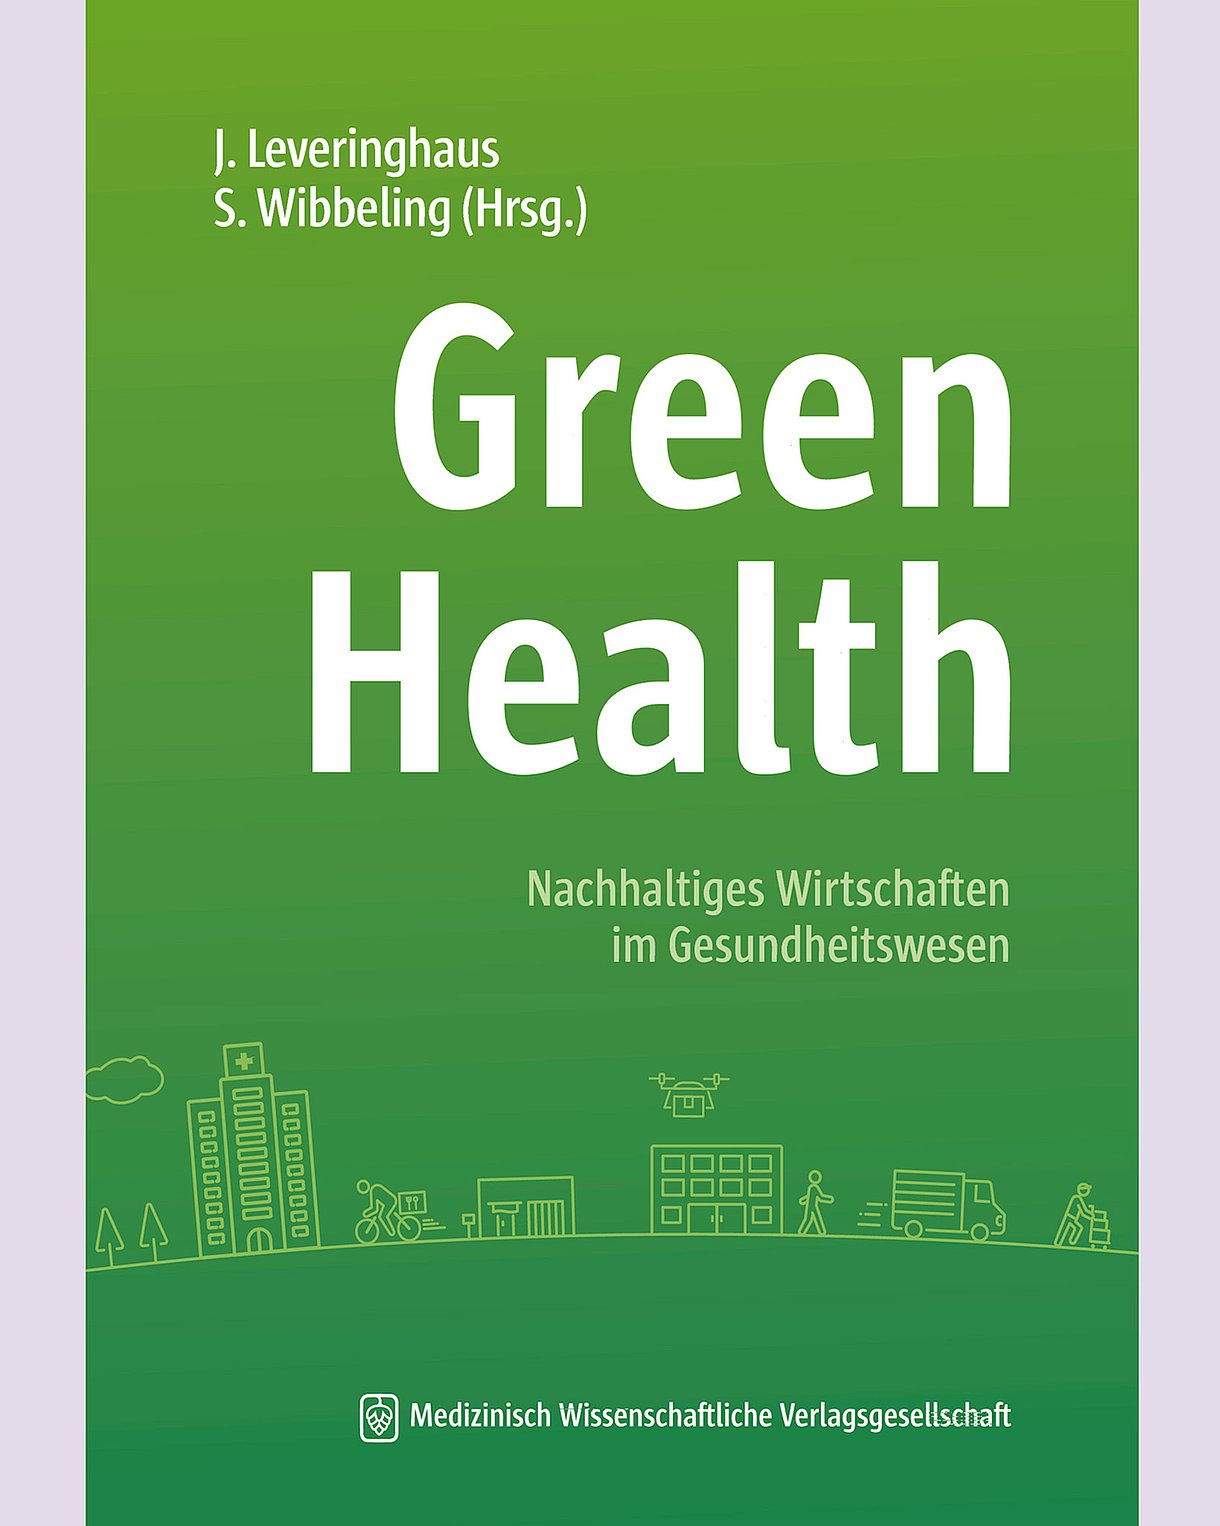 Foto: Buchcover: Jens Leveringhaus, Sebastian Wibbeling (Hrsg.): Green Health. Berlin, Medizinisch Wissenschaftliche Verlagsgesellschaft.